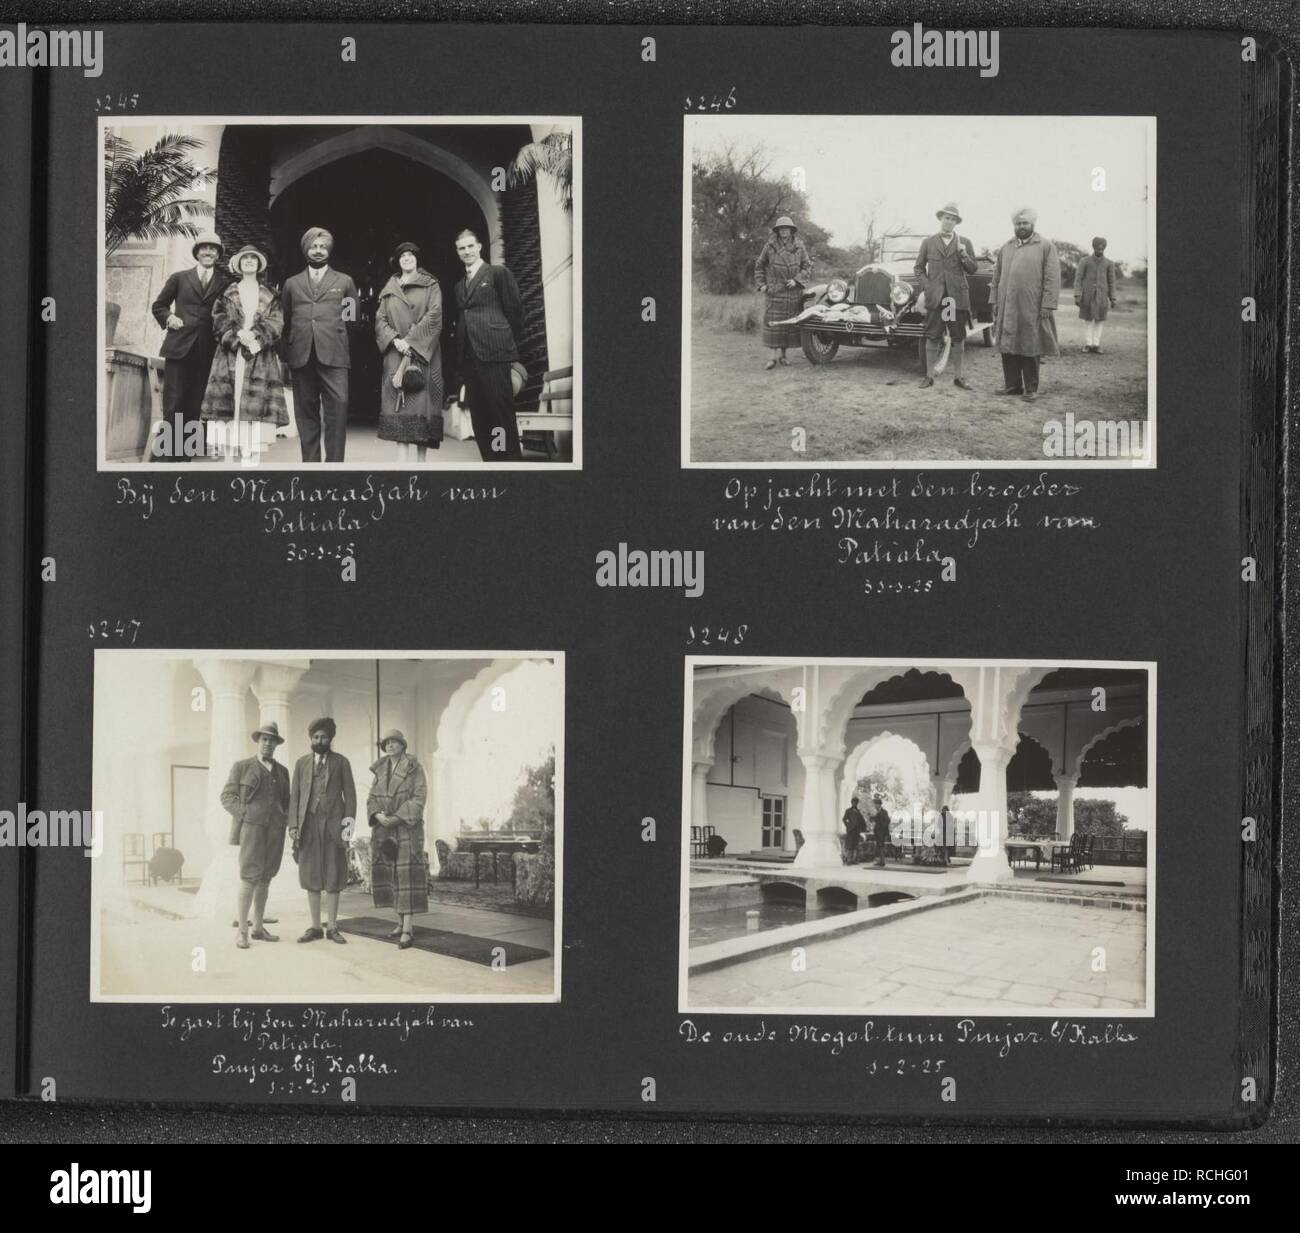 Albumblad met vier fotos. Linksboven ontvangst bij de Maharaja van Patiala, v., Bestanddeelnr 27 25. Stock Photo